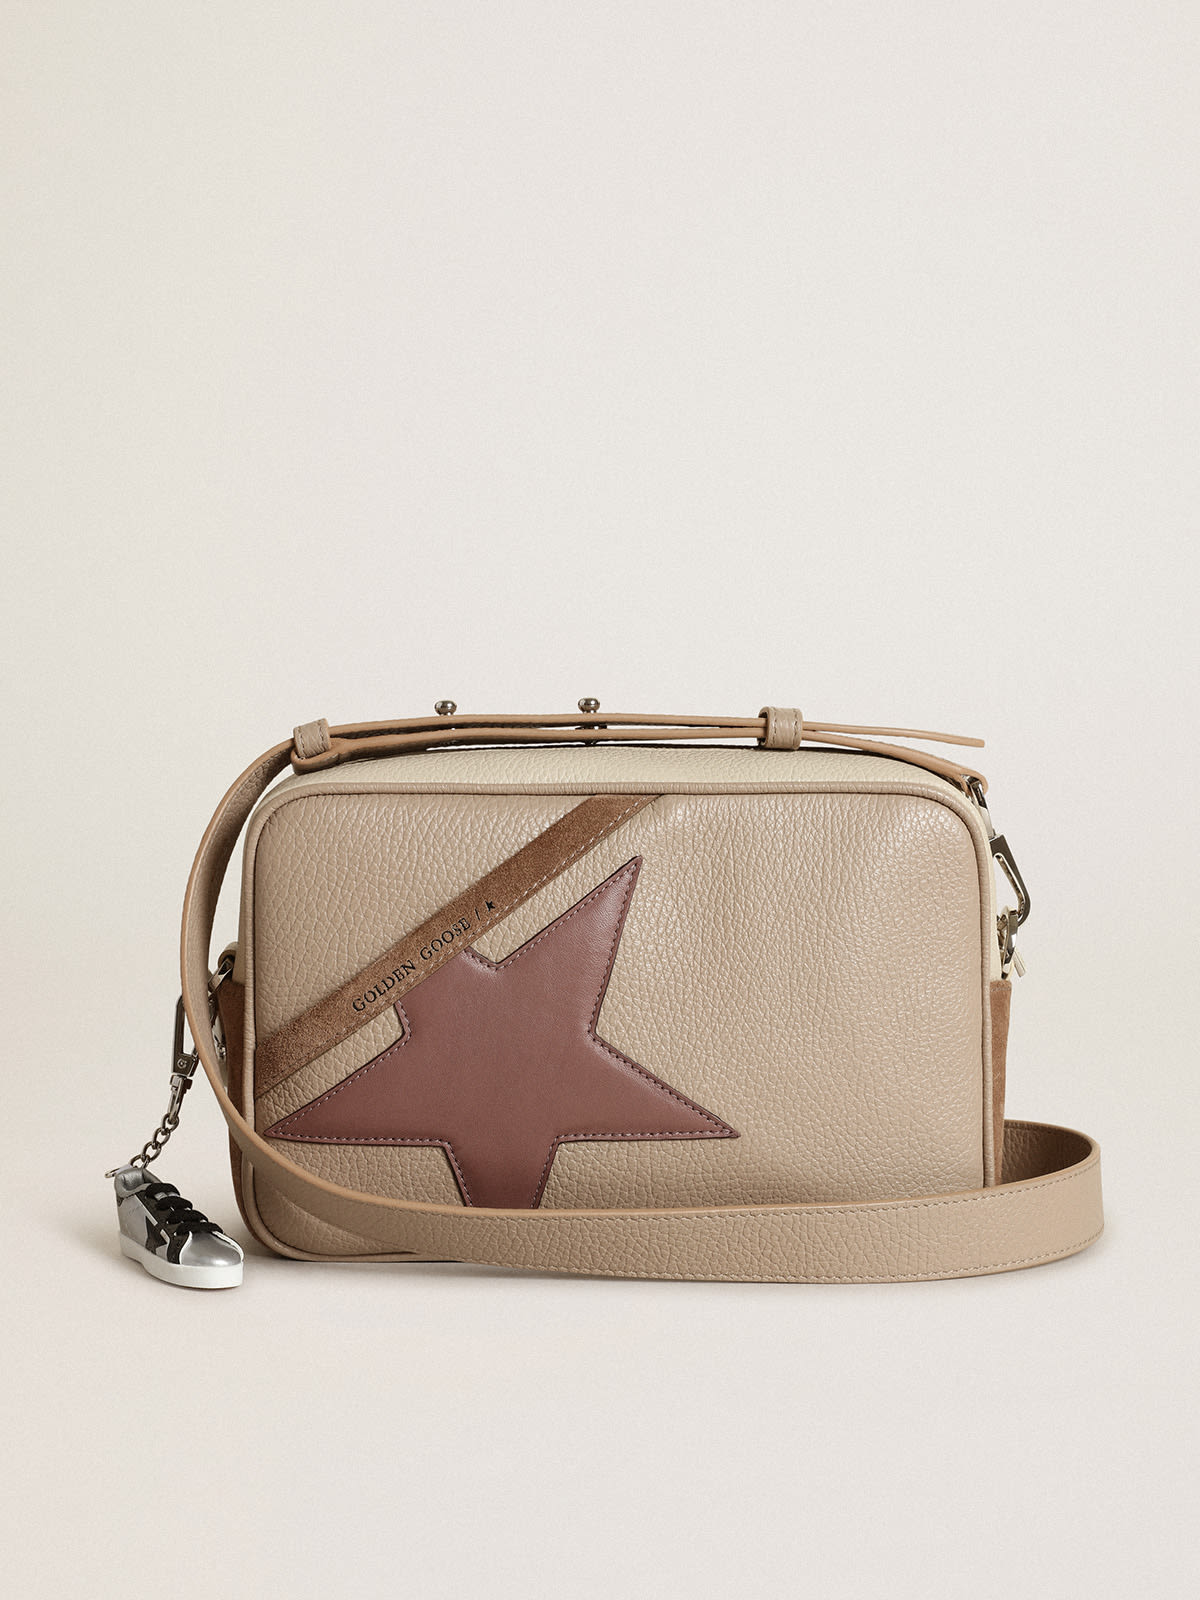 Golden Goose - Borsa Star Bag large in pelle martellata color bianco sporco e suede color cappuccino con stella in pelle viola in 